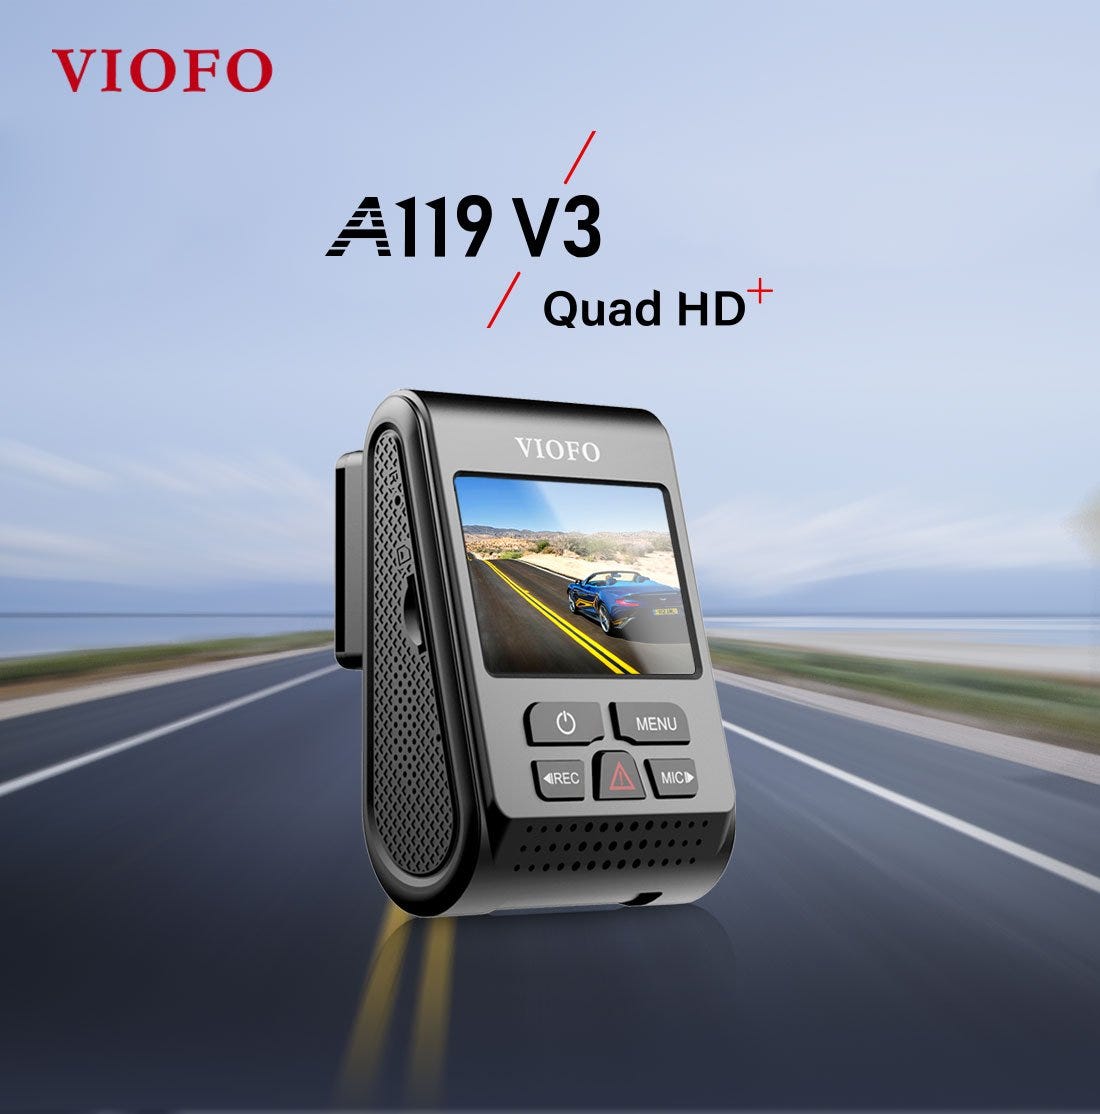 2560x1600 VIOFO A119 V3 Car Dash Camera 30fps 